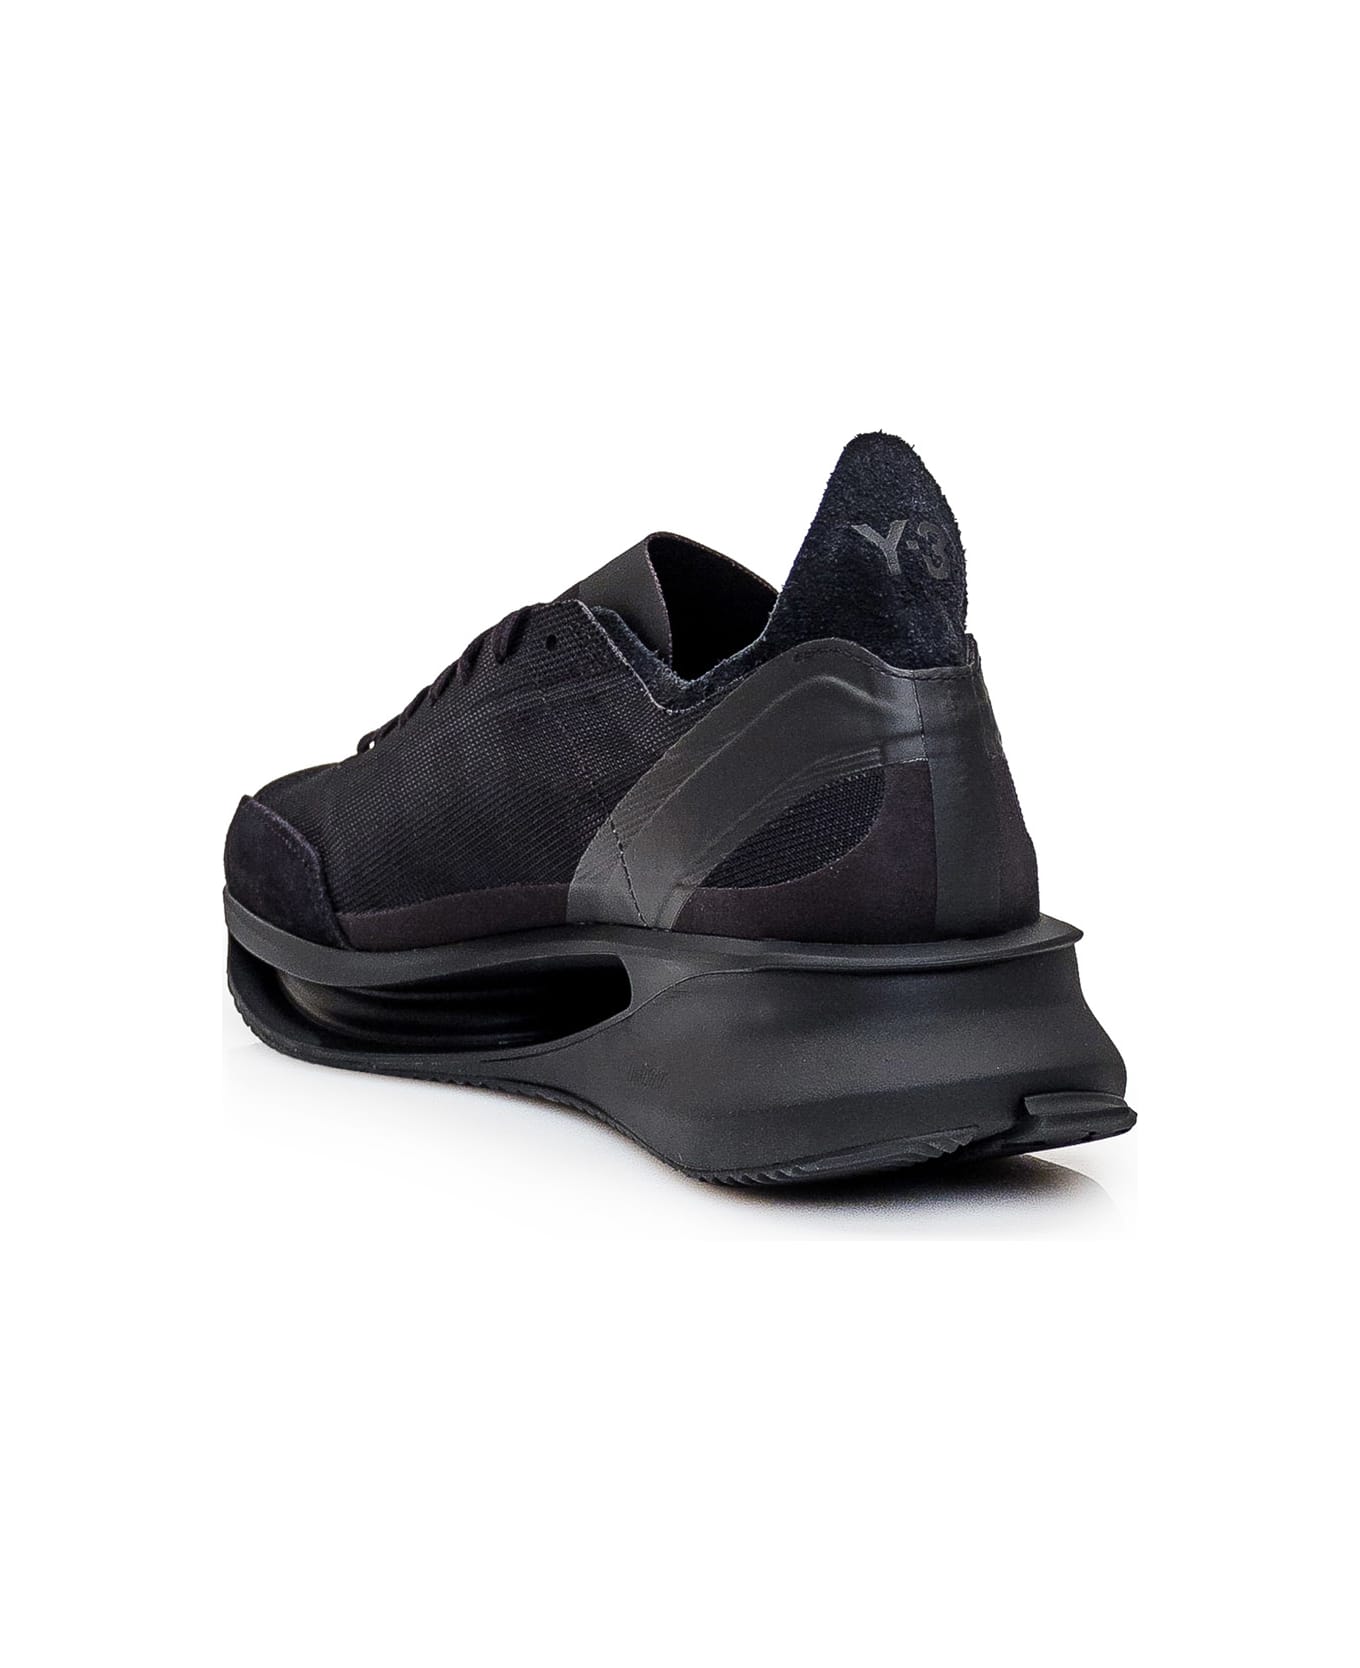 Y-3 Gendo Run Sneaker - Black